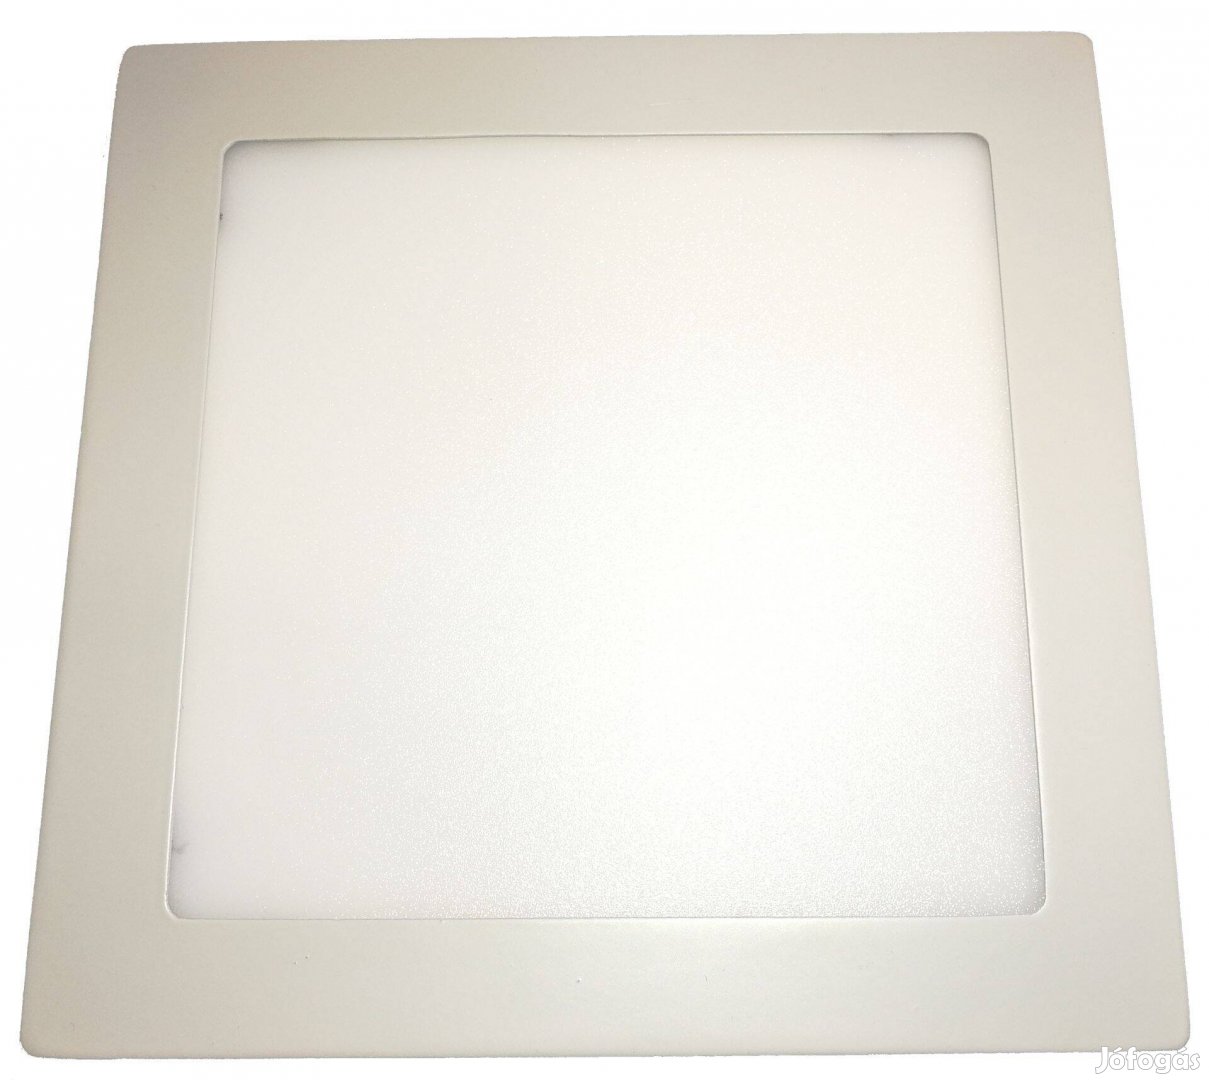 18W-os beépíthető mini led panel négyzet alakú, 3000K (meleg fehér)